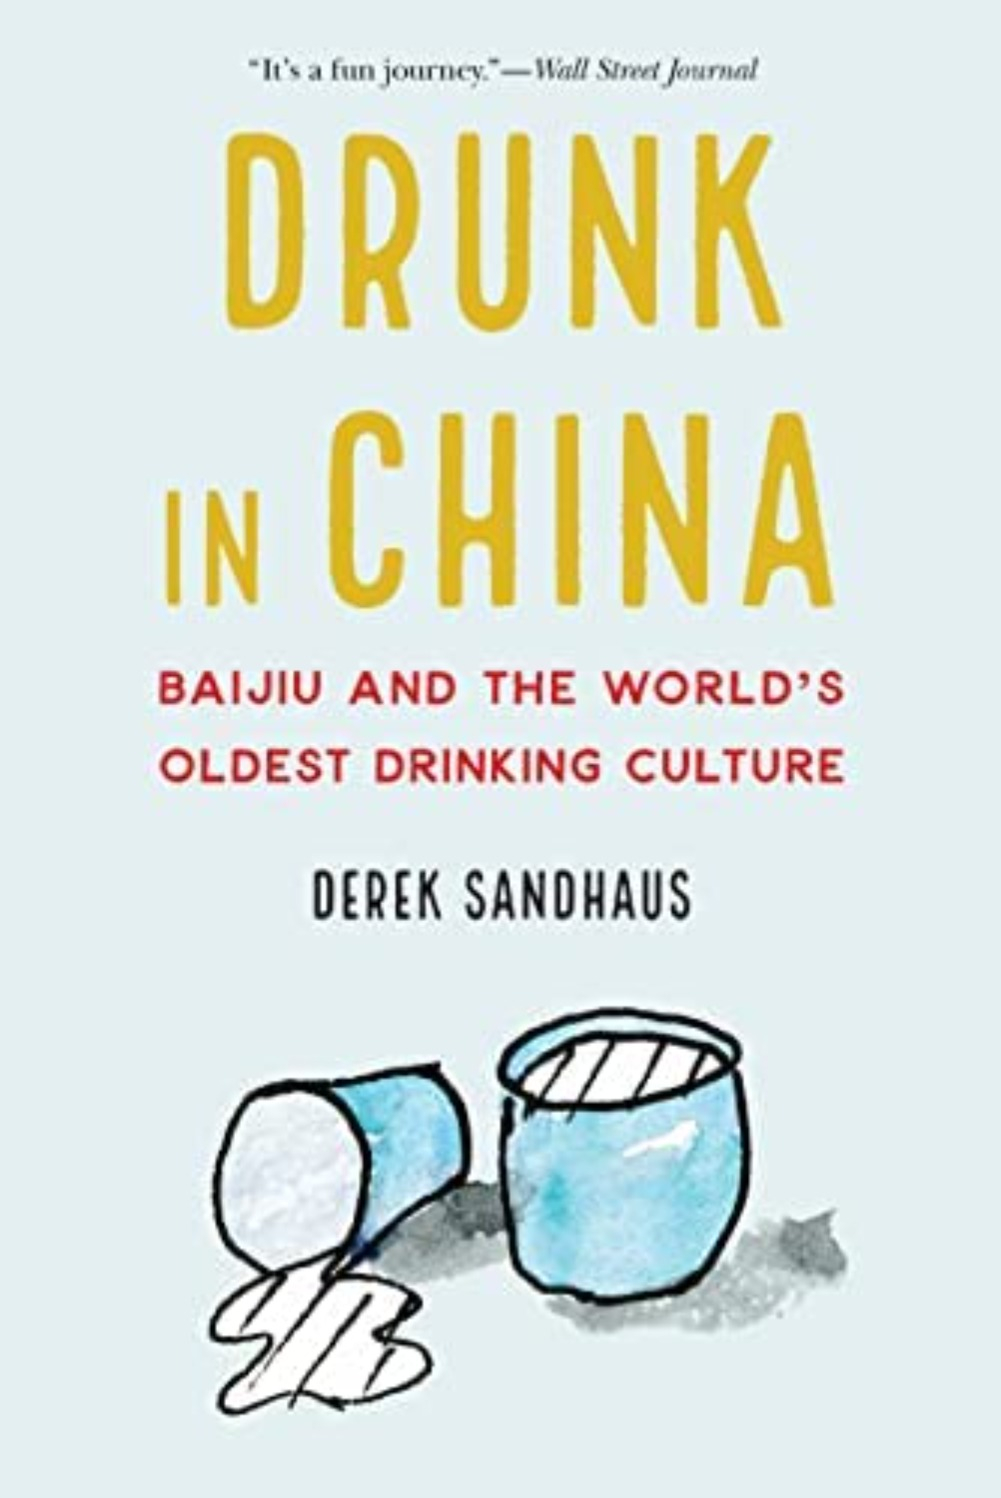 Drunk in China by Derek Sandhaus